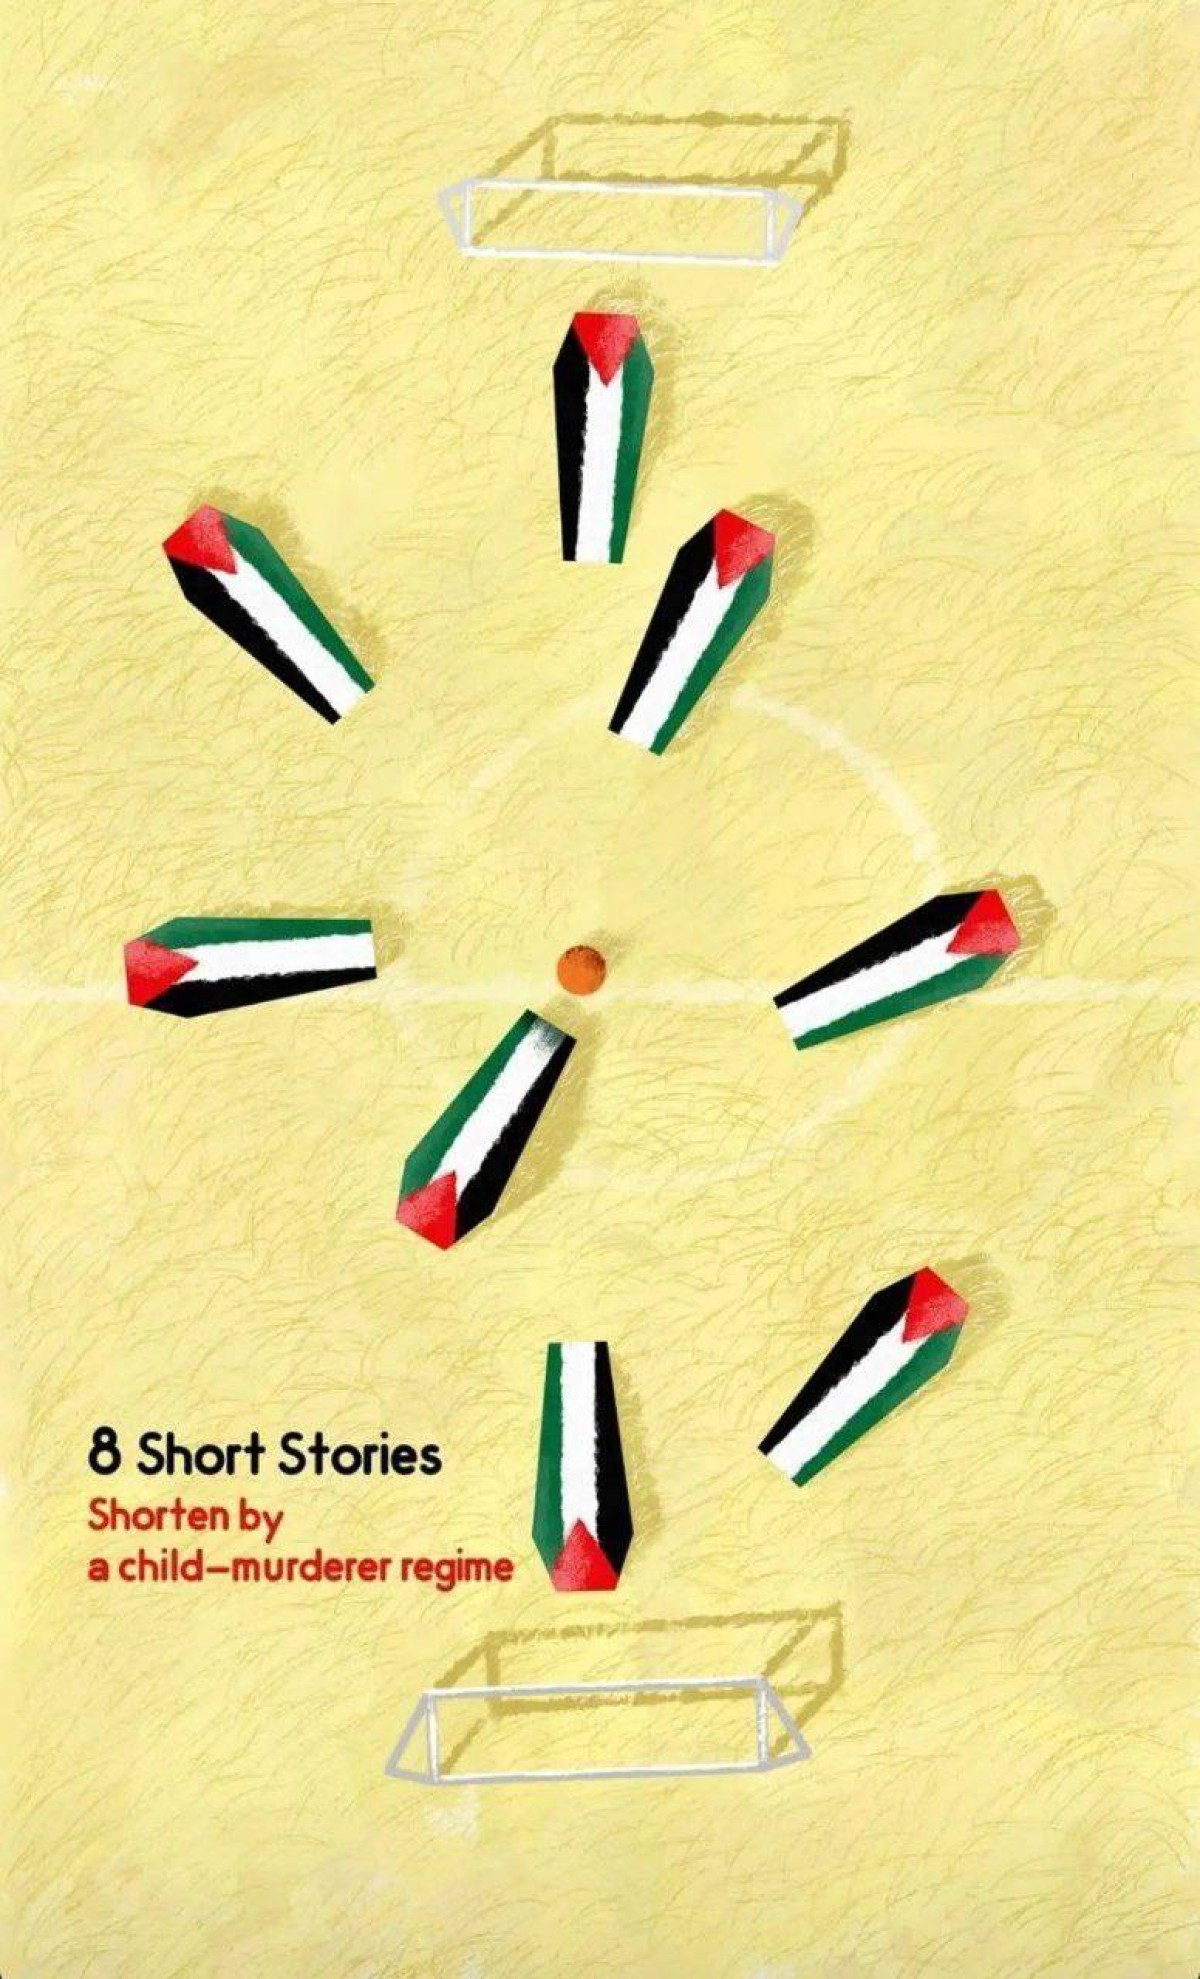 8 Short Stories Shorten by a child-murderer regime